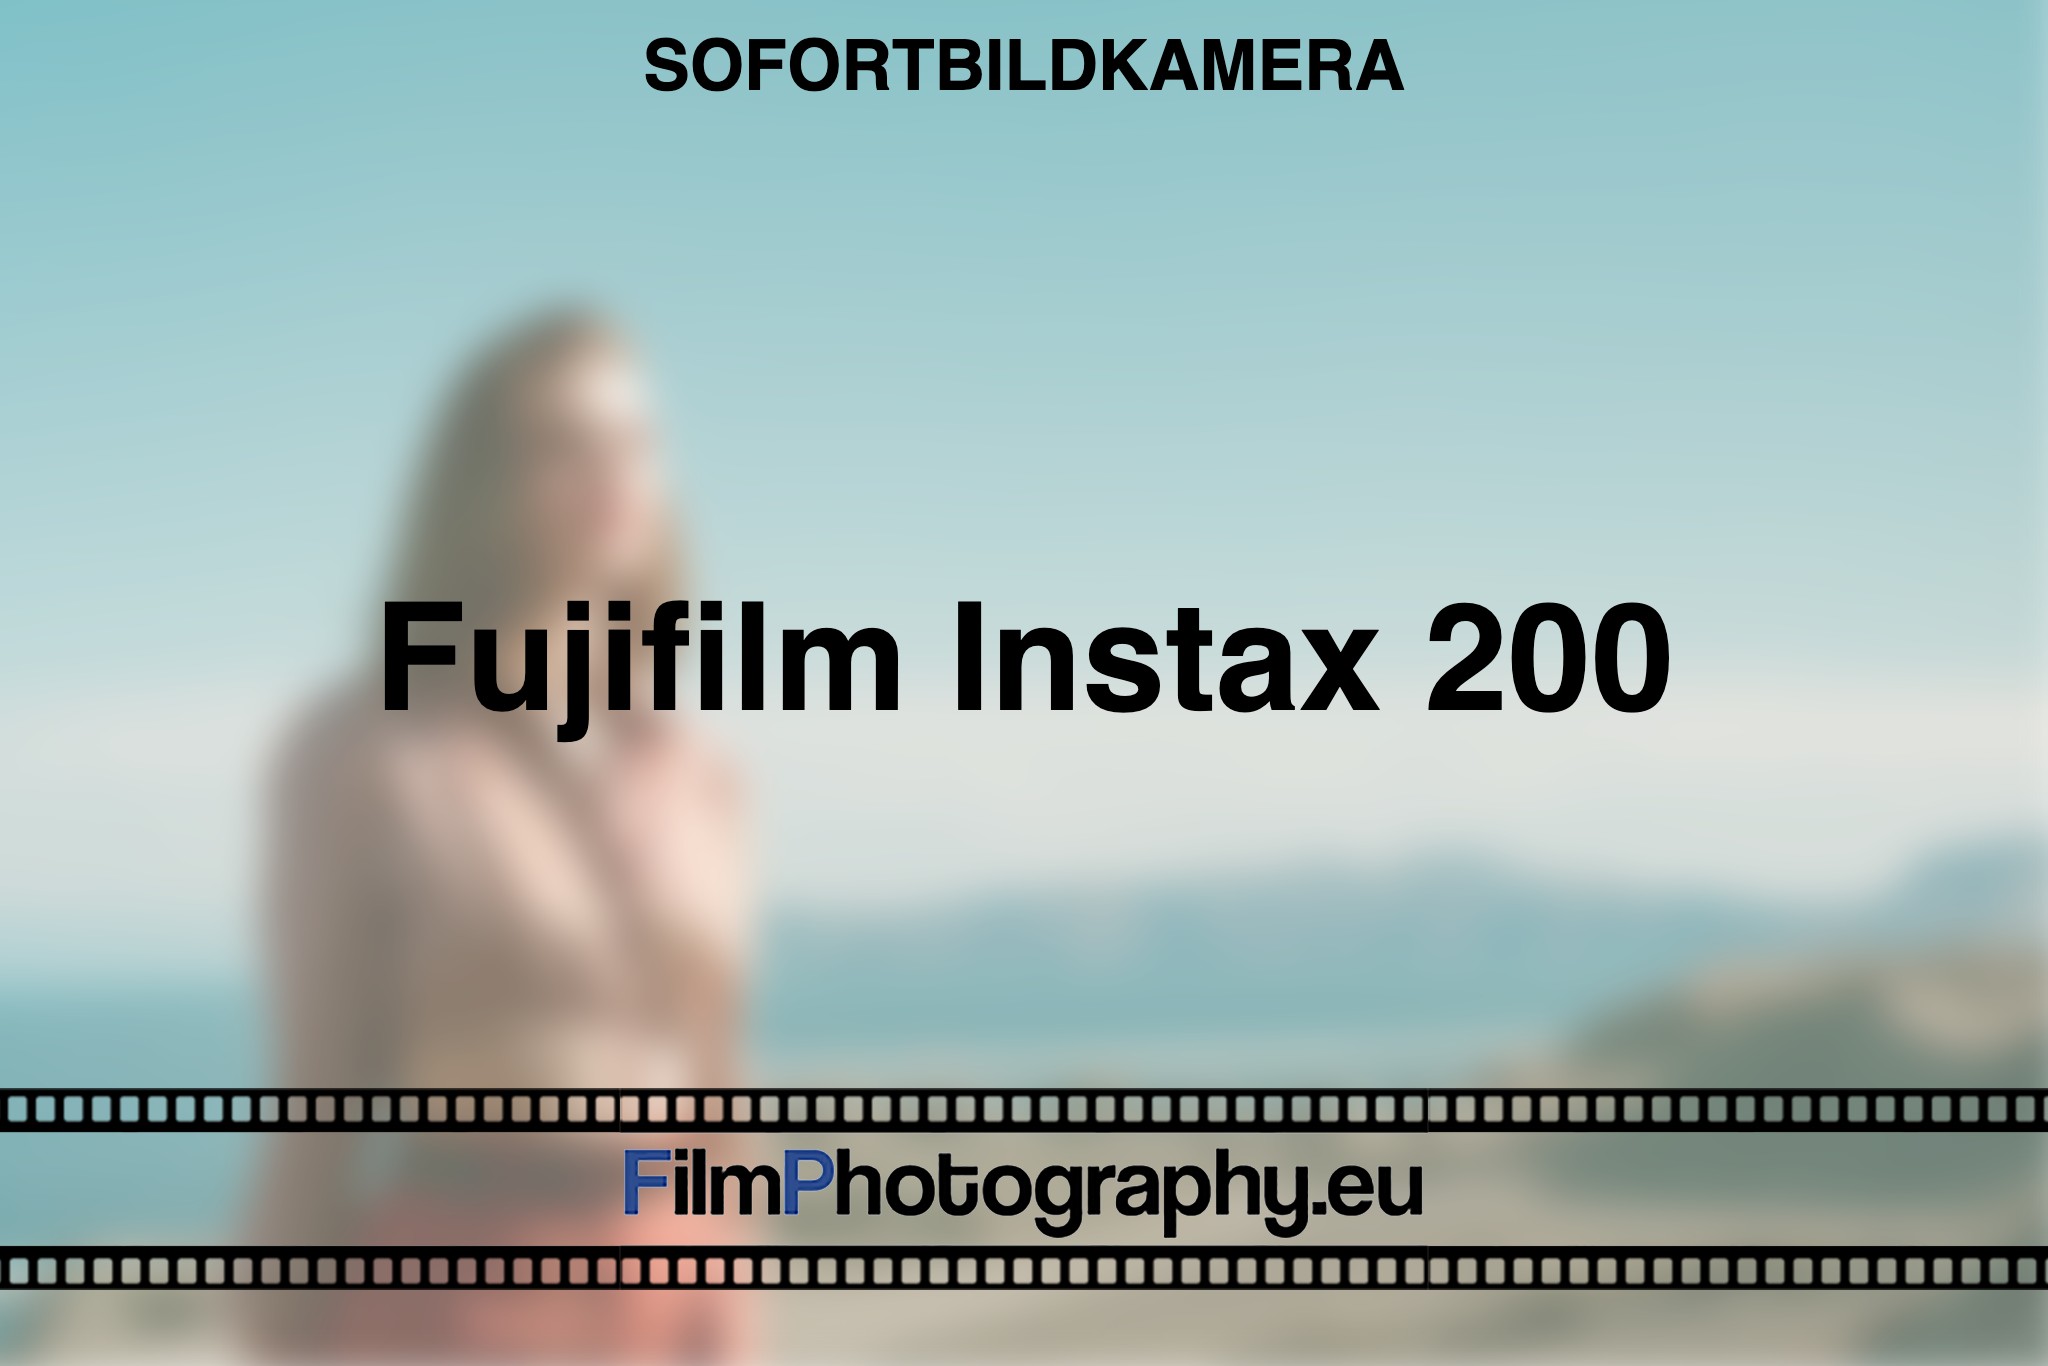 fujifilm-instax-200-sofortbildkamera-bnv